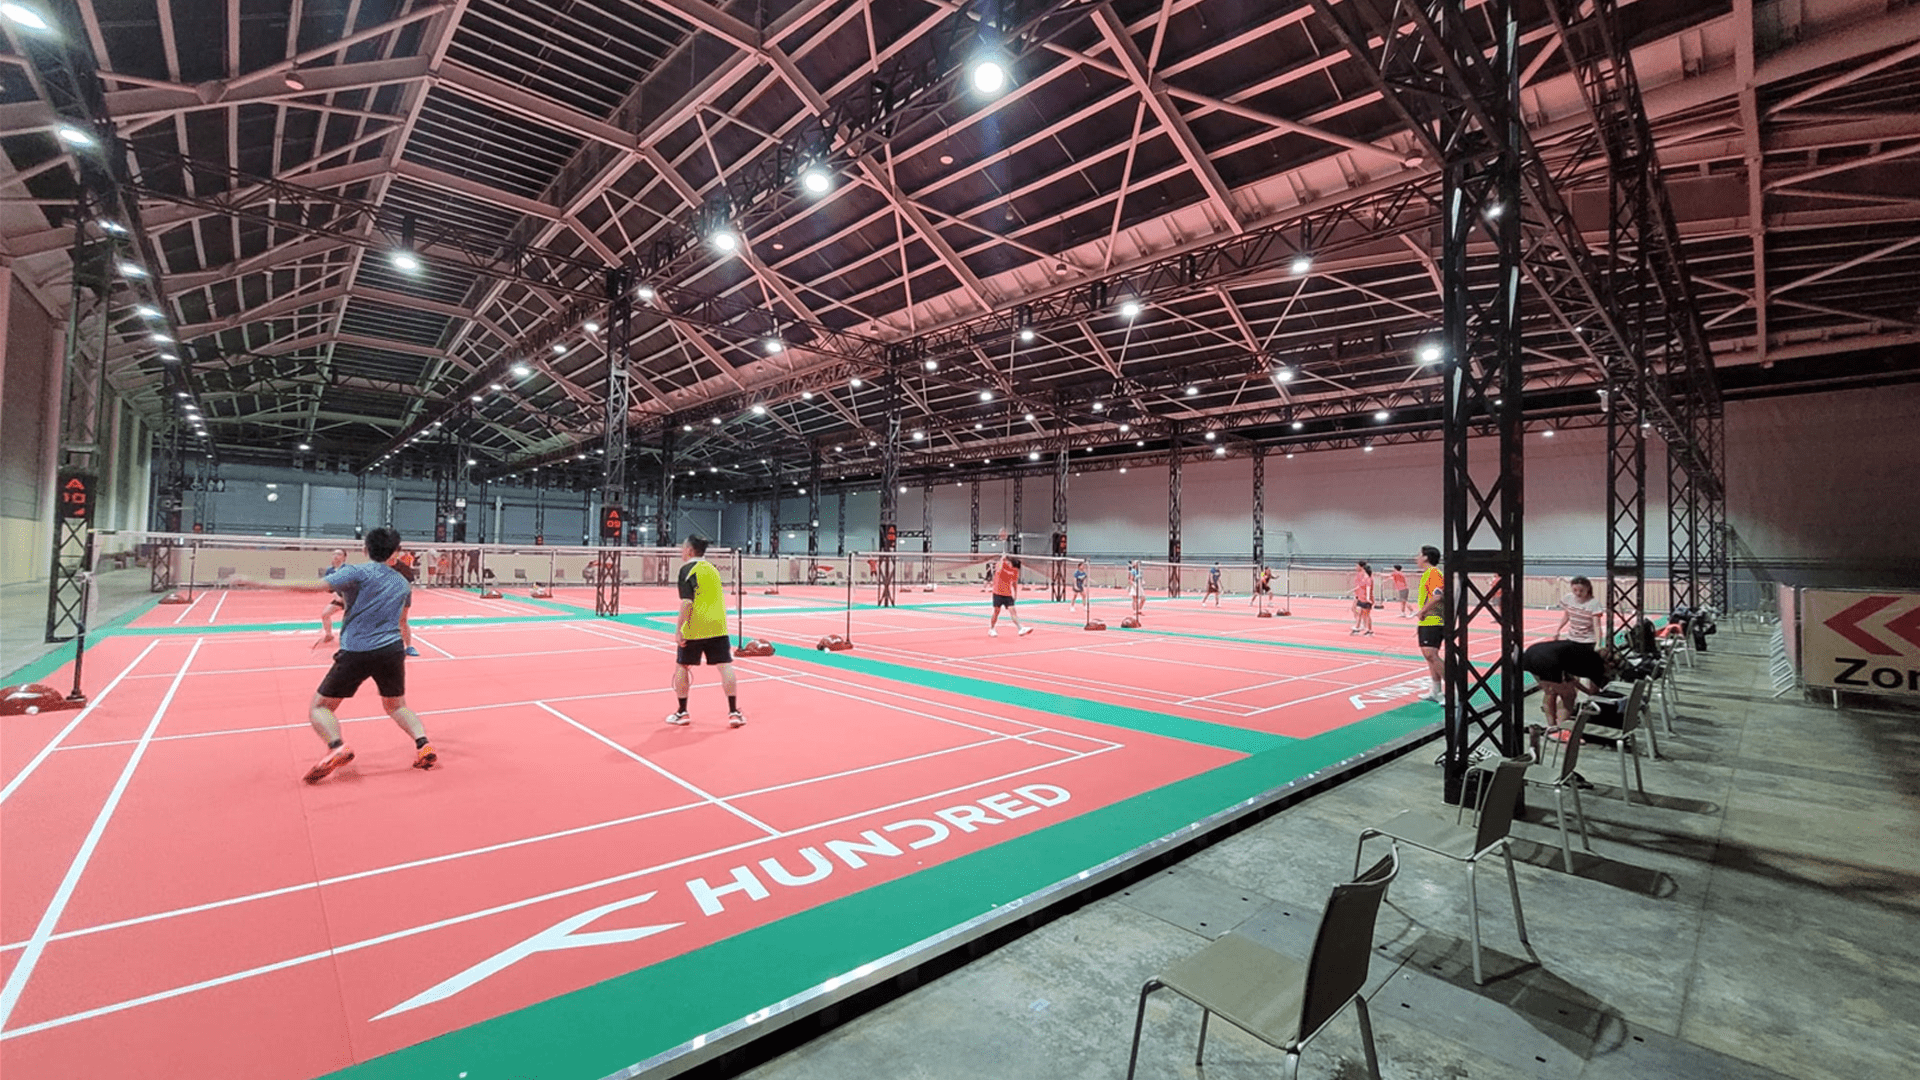 badminton court - Singapore Badminton Hall at EXPO